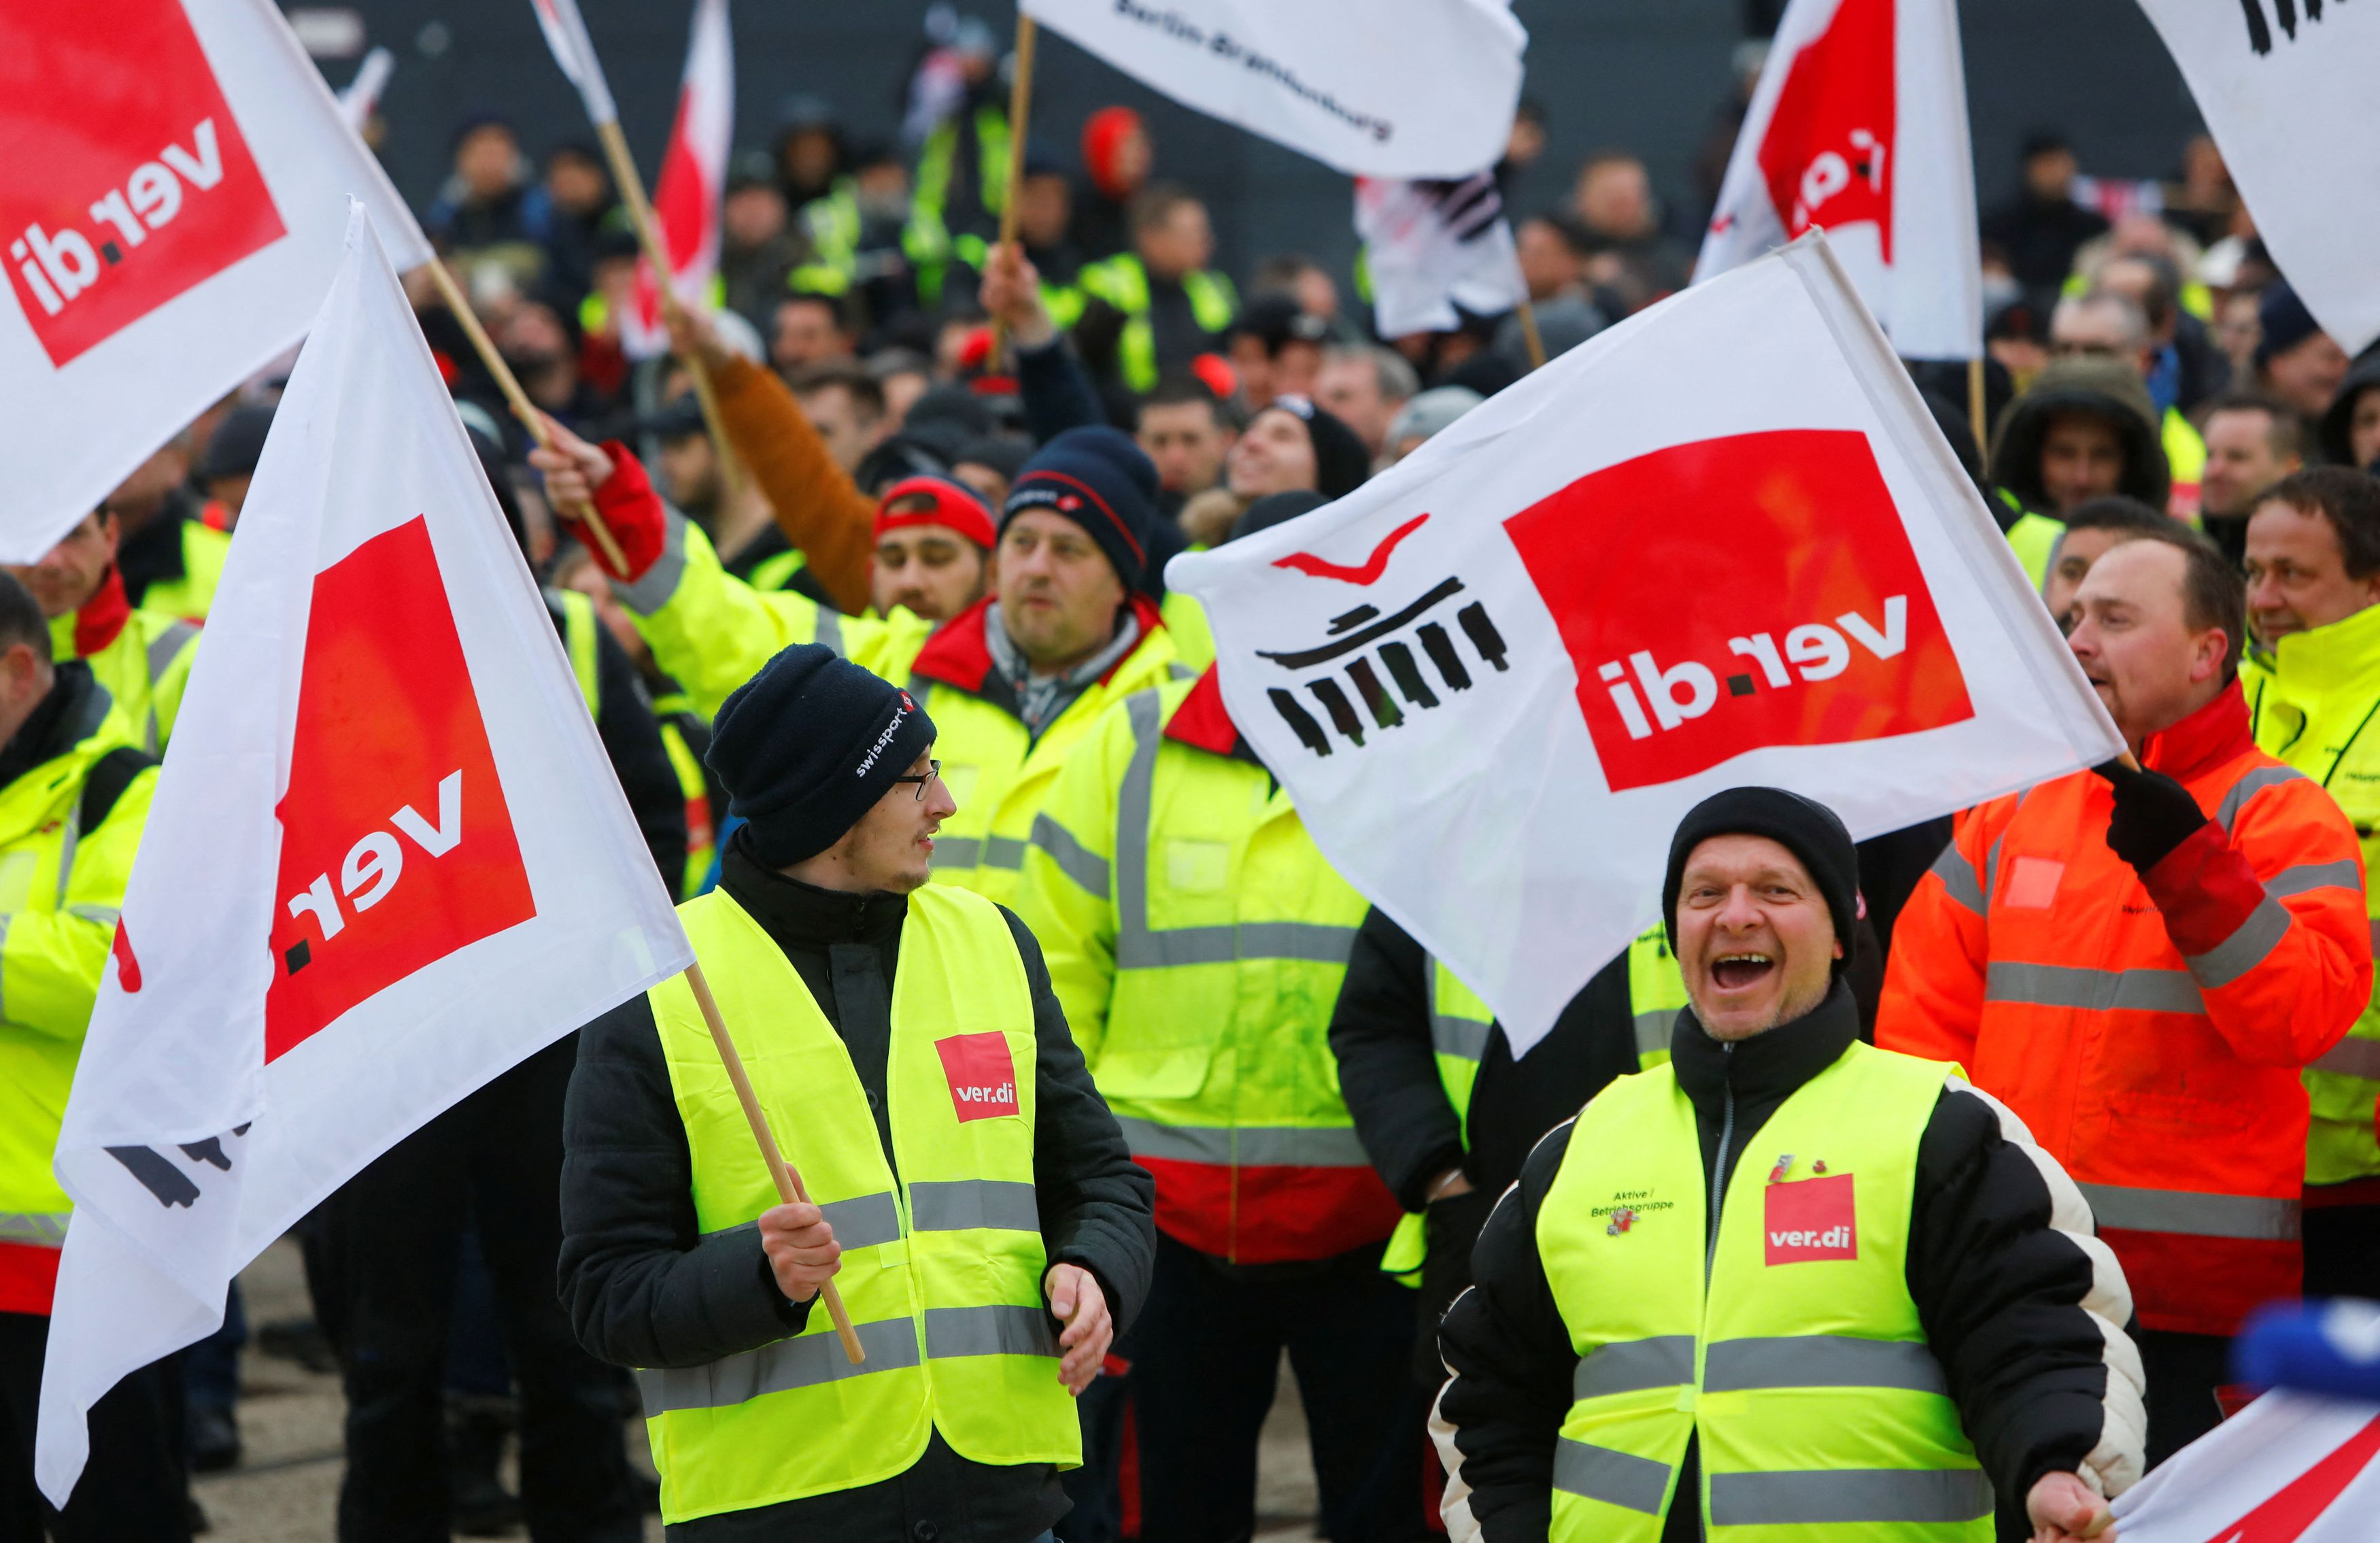 Γερμανία: Απεργία των εργαζομένων εδάφους στο αεροδρόμιο του Βερολίνου - Ακυρώθηκαν όλες οι πτήσεις